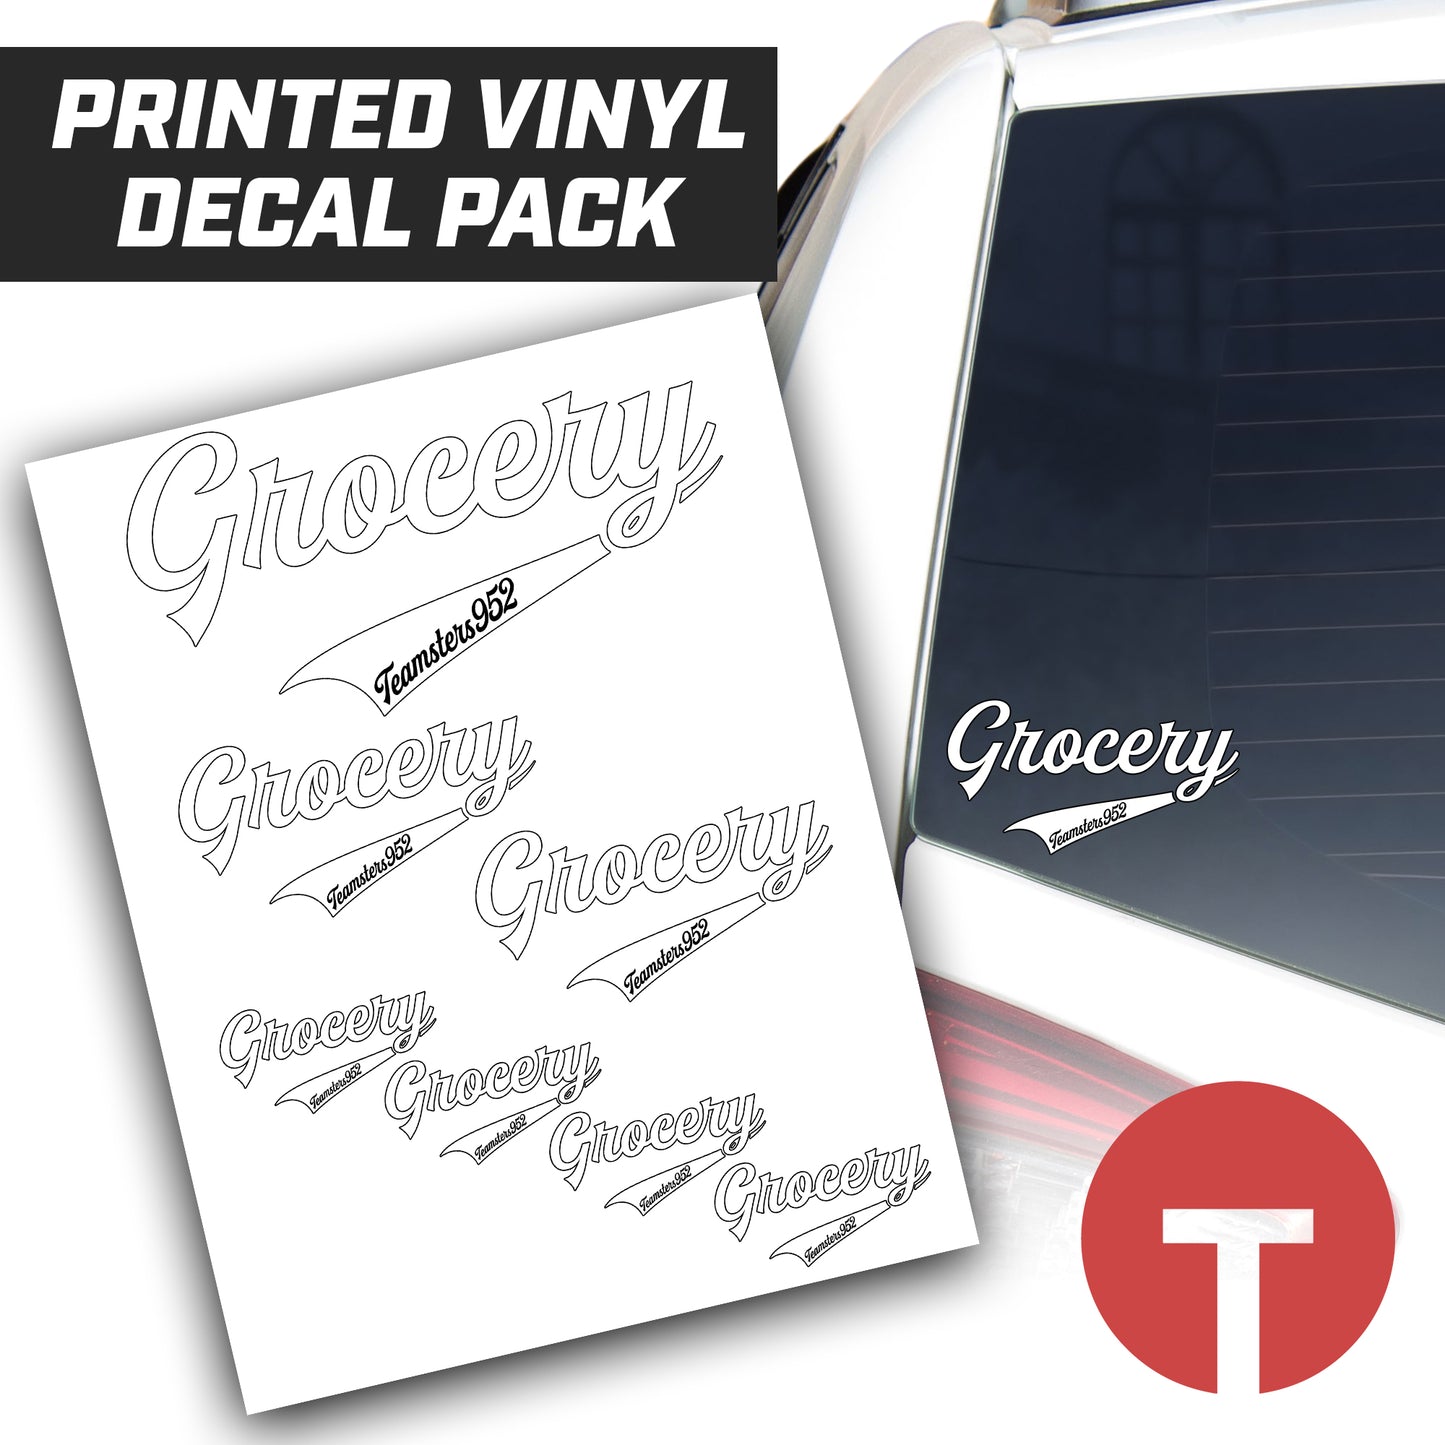 Grocery - Teamsters - Logo Vinyl Decal Pack